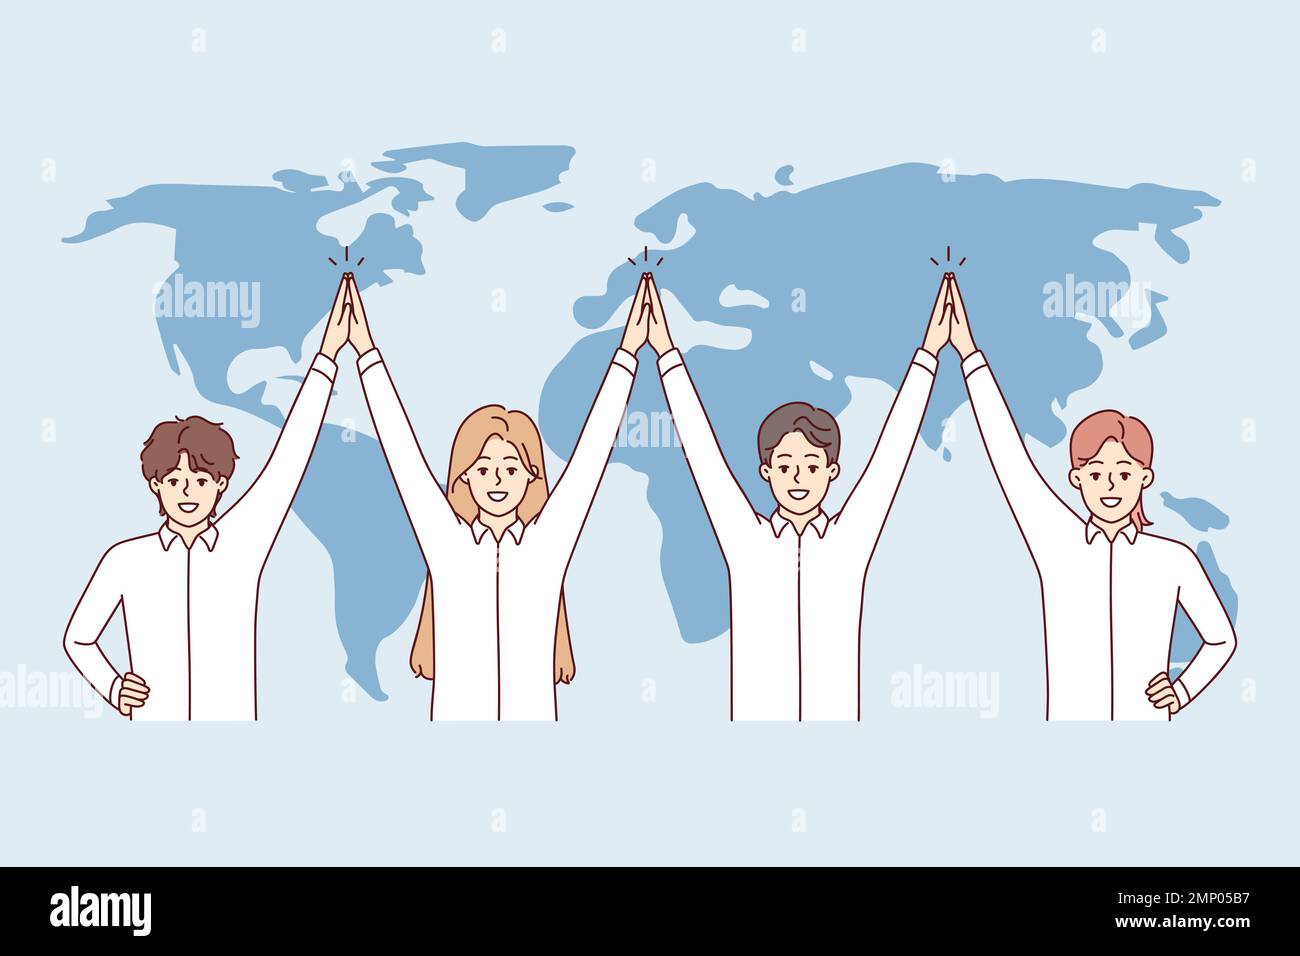 Une équipe amicale d'entreprise internationale se trouve près de la carte du monde avec les mains vers le haut, faisant preuve de solidarité. Hommes et femmes en chemises blanches travaillant dans des entreprises mondiales. Illustration vectorielle plate Illustration de Vecteur